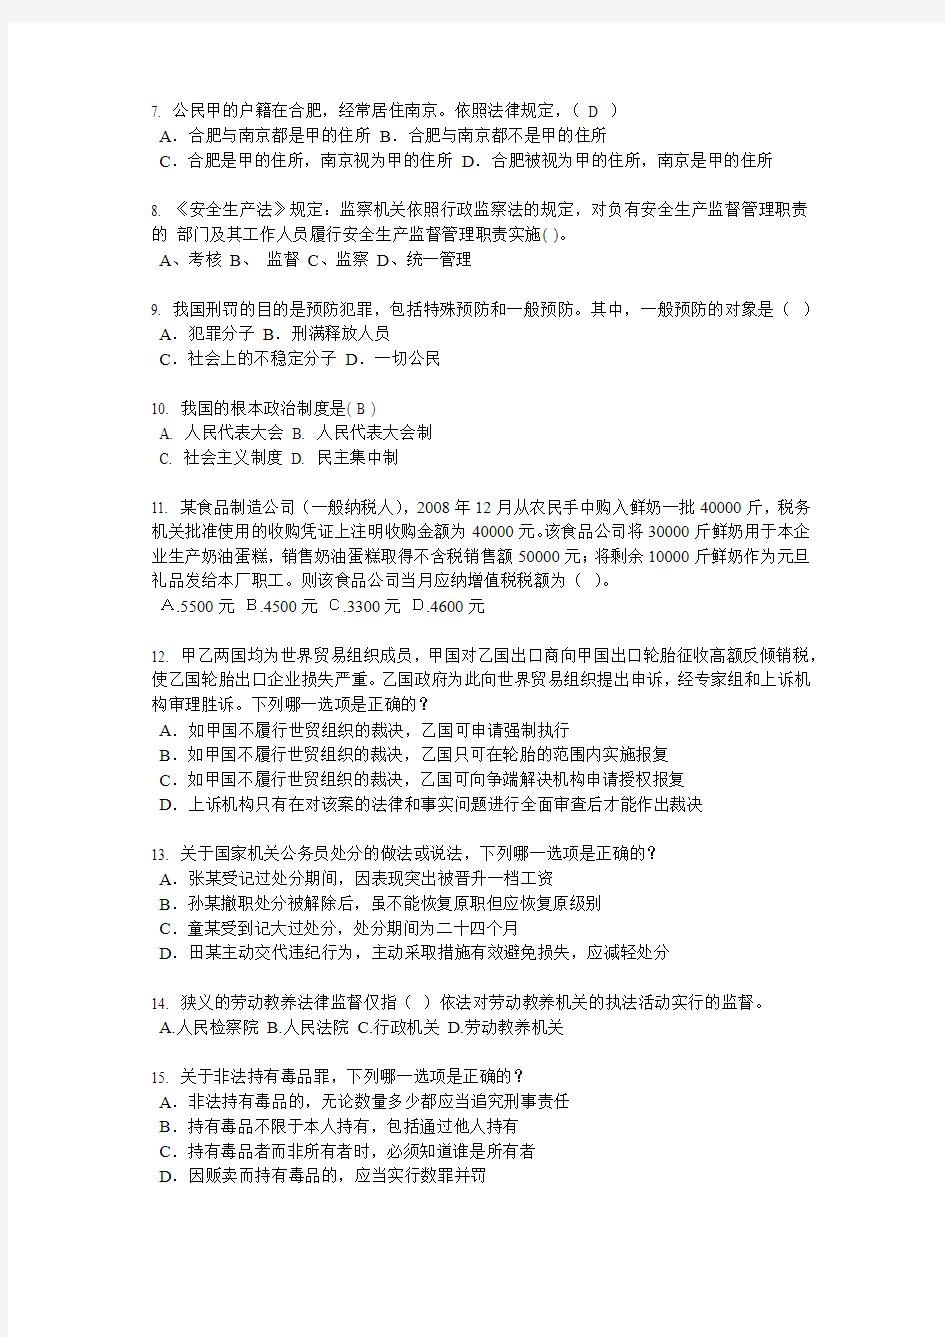 台湾省2018年下半年企业法律顾问考试《综合法律》考试试题